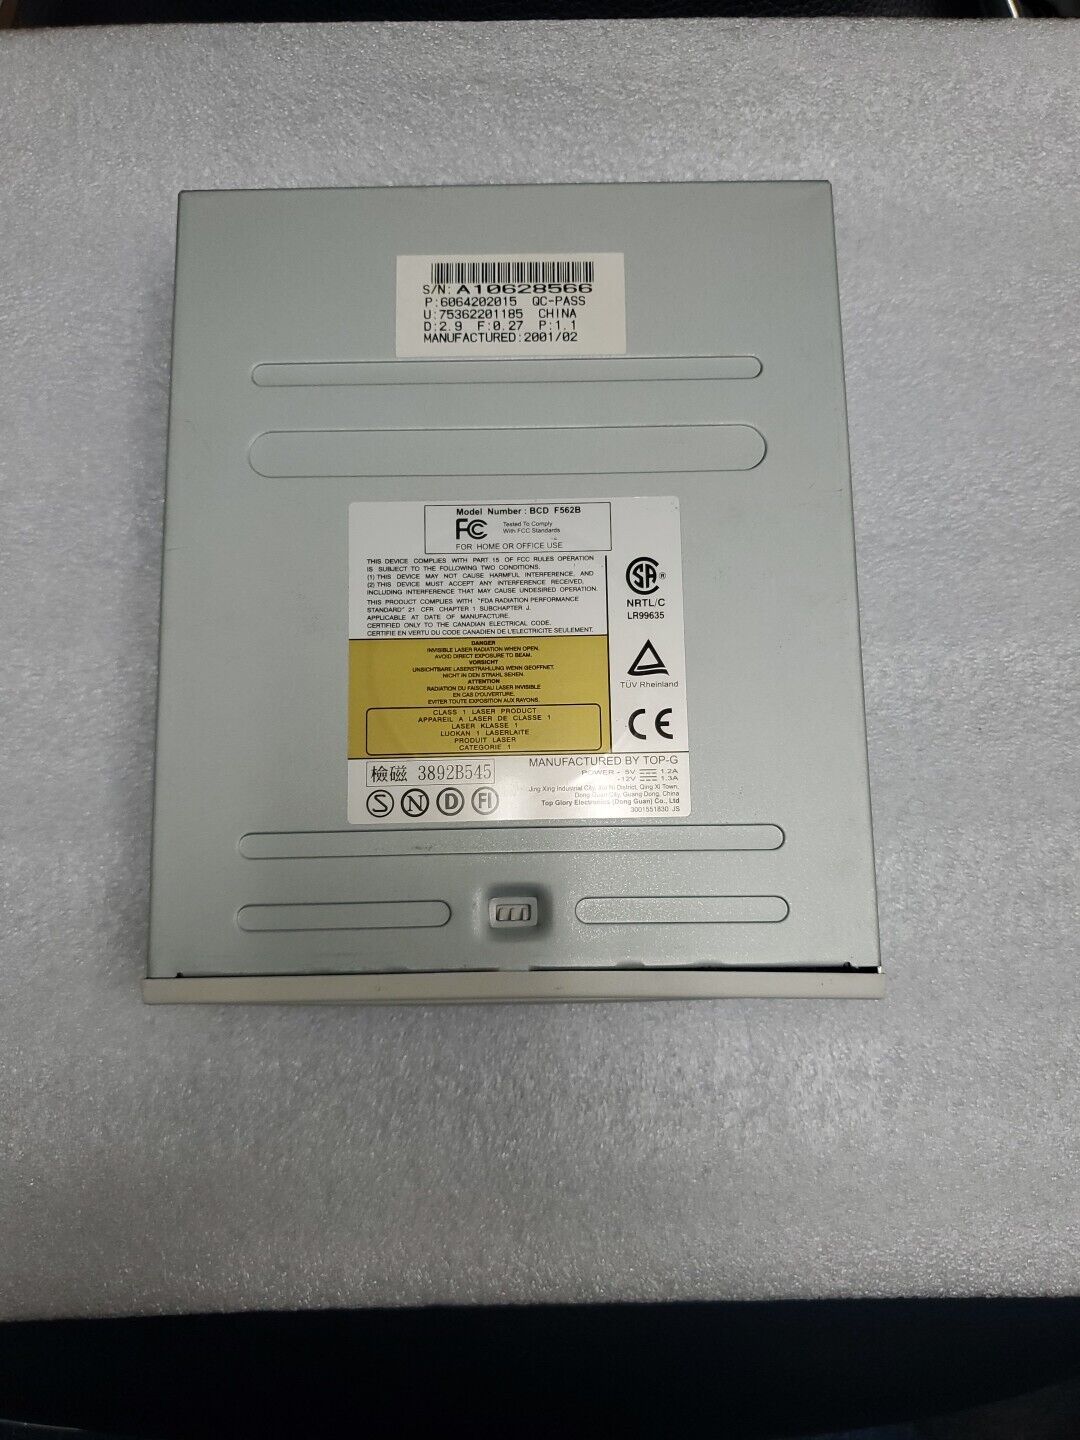 CD-ROM 52X BCD F562B QC-PASS P: 6064202015 D: 2.9 F: 0.27 P: 1.1 A10628566